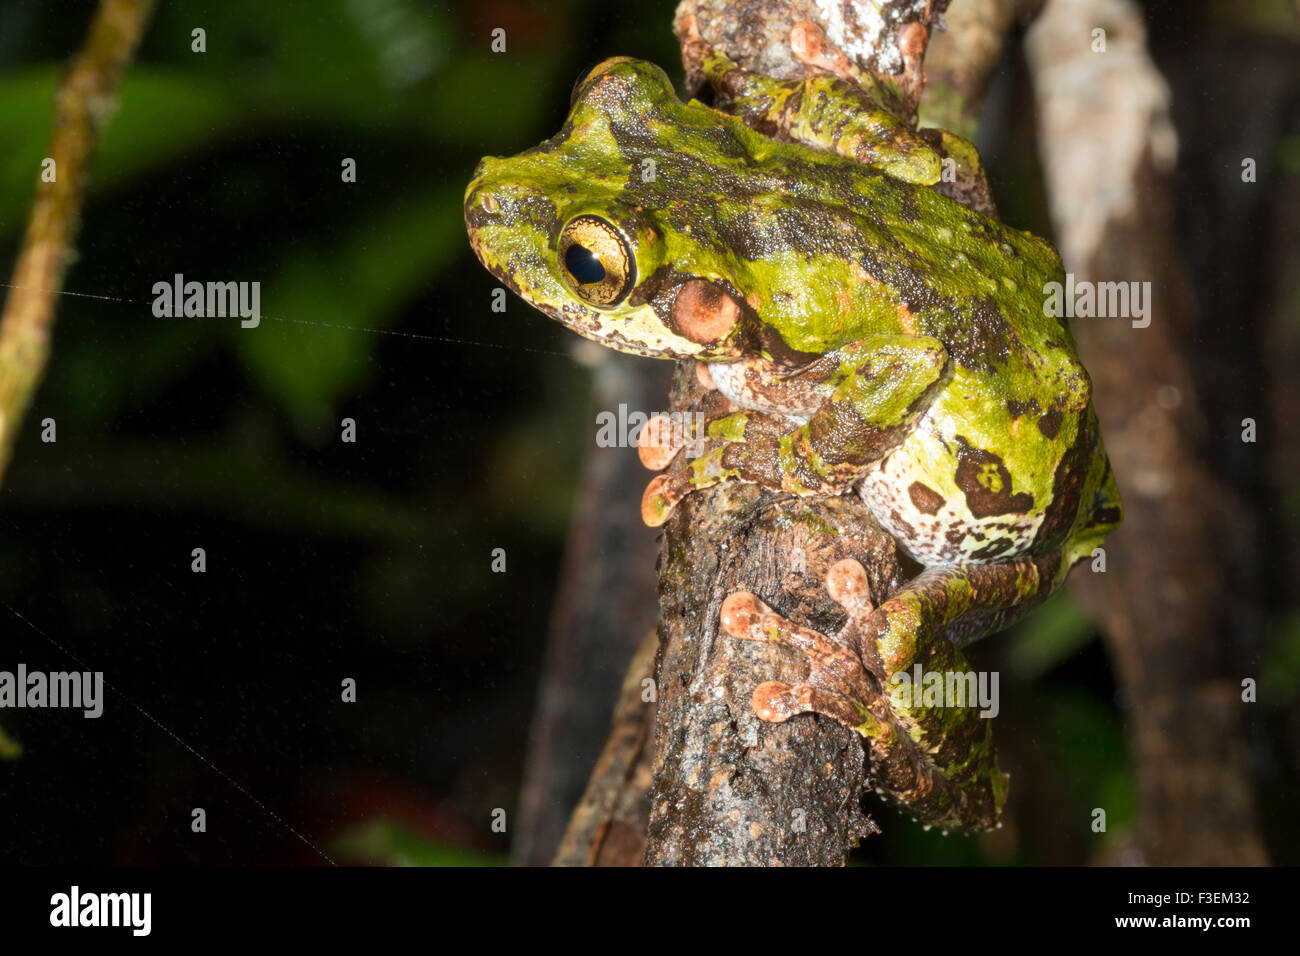 Buckley patas delgadas Treefrog (Osteocephalus buckleyi). Hembra con un llamativo estilo militar camuflado Foto de stock